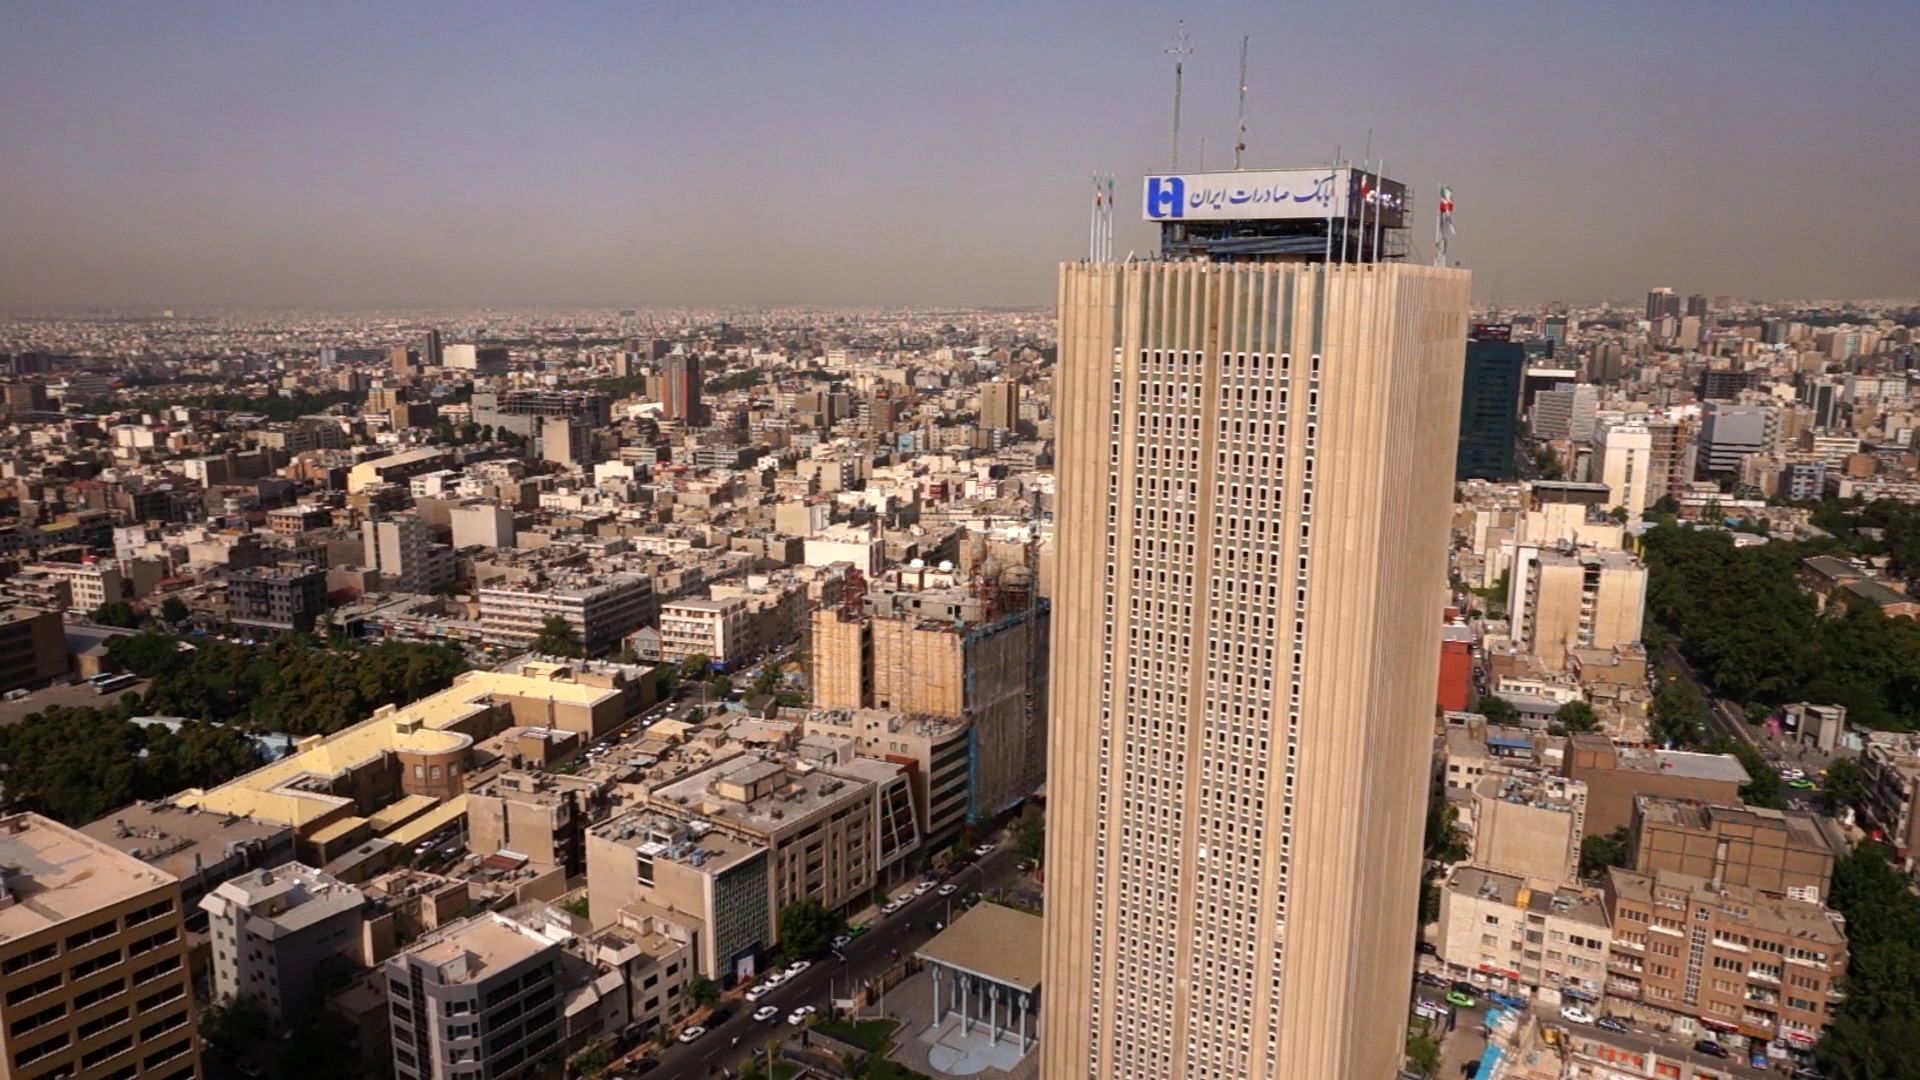 مدیرعامل بانک صادرات ایران کارآفرین برتر شد